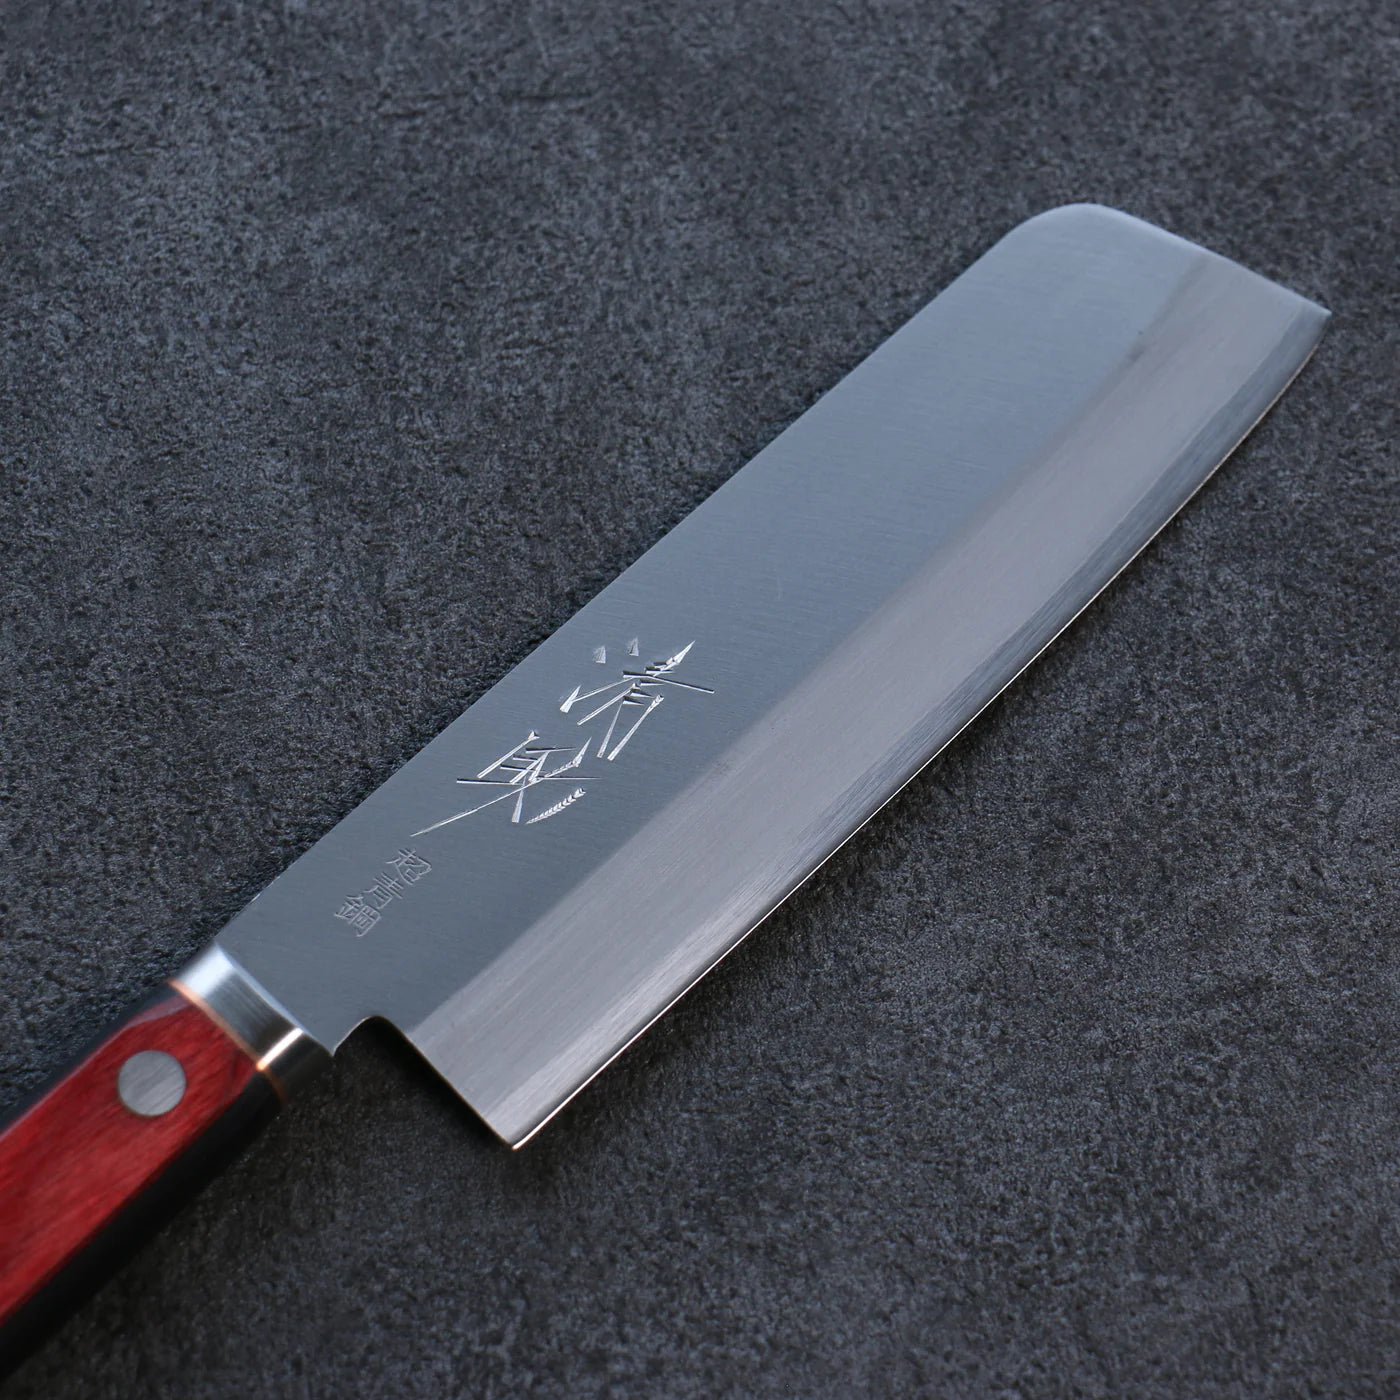 Usuba-Obst- und Gemüse-Spezialmesser, Marke Seisuke, superblauer Stahl, polierte Oberfläche, 160 mm japanisches Messer, roter und schwarzer Sperrholzgriff